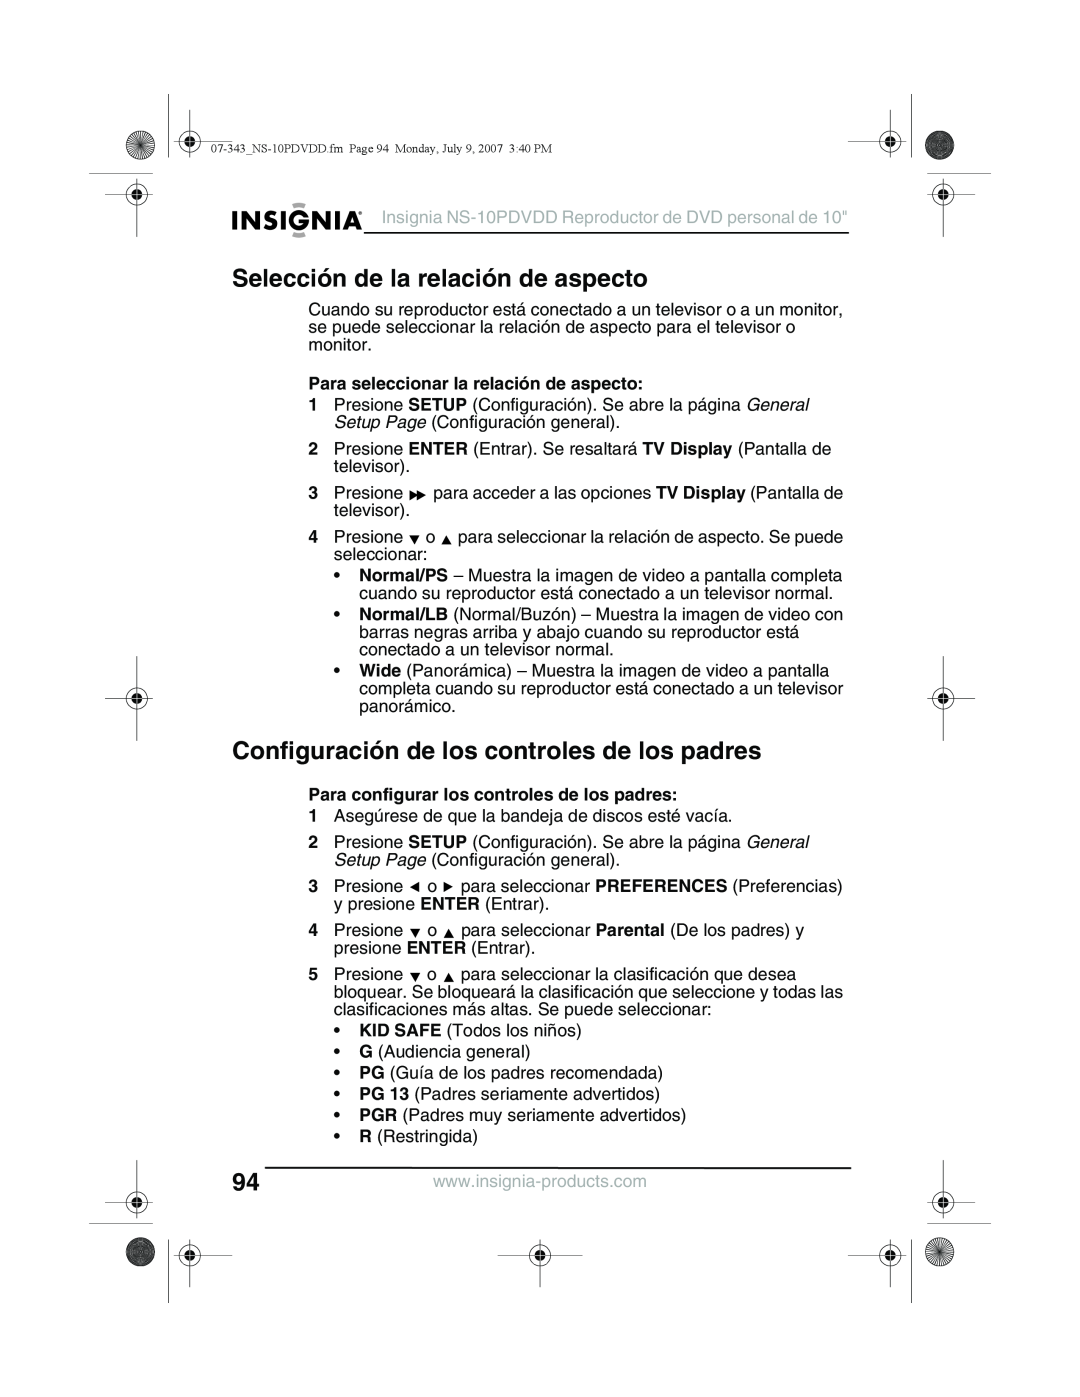 Insignia NS-10PDVDD manual Selección de la relación de aspecto, Configuración de los controles de los padres 